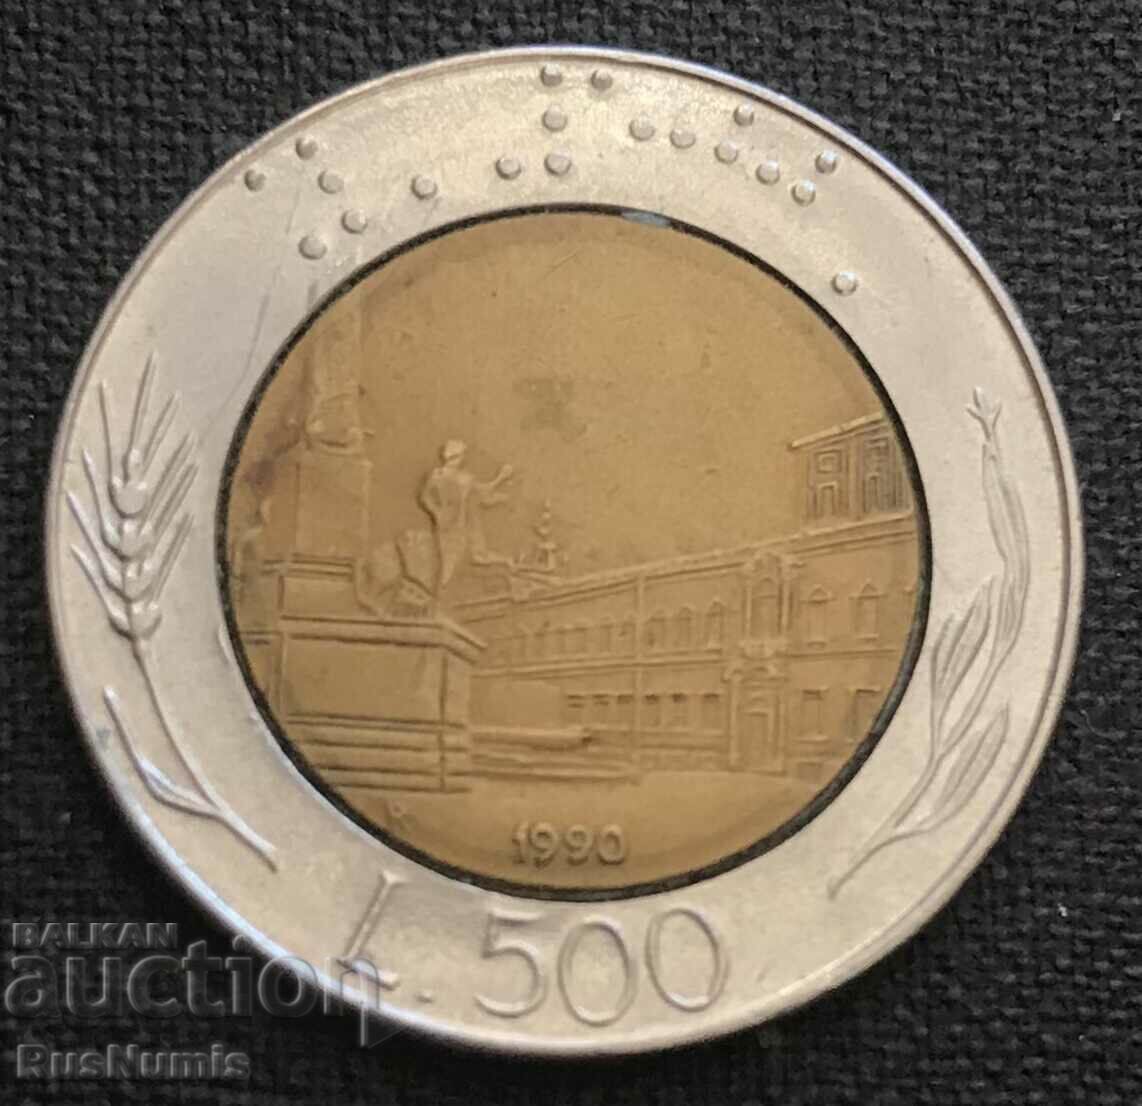 Ιταλία.500 λίρες 1990.